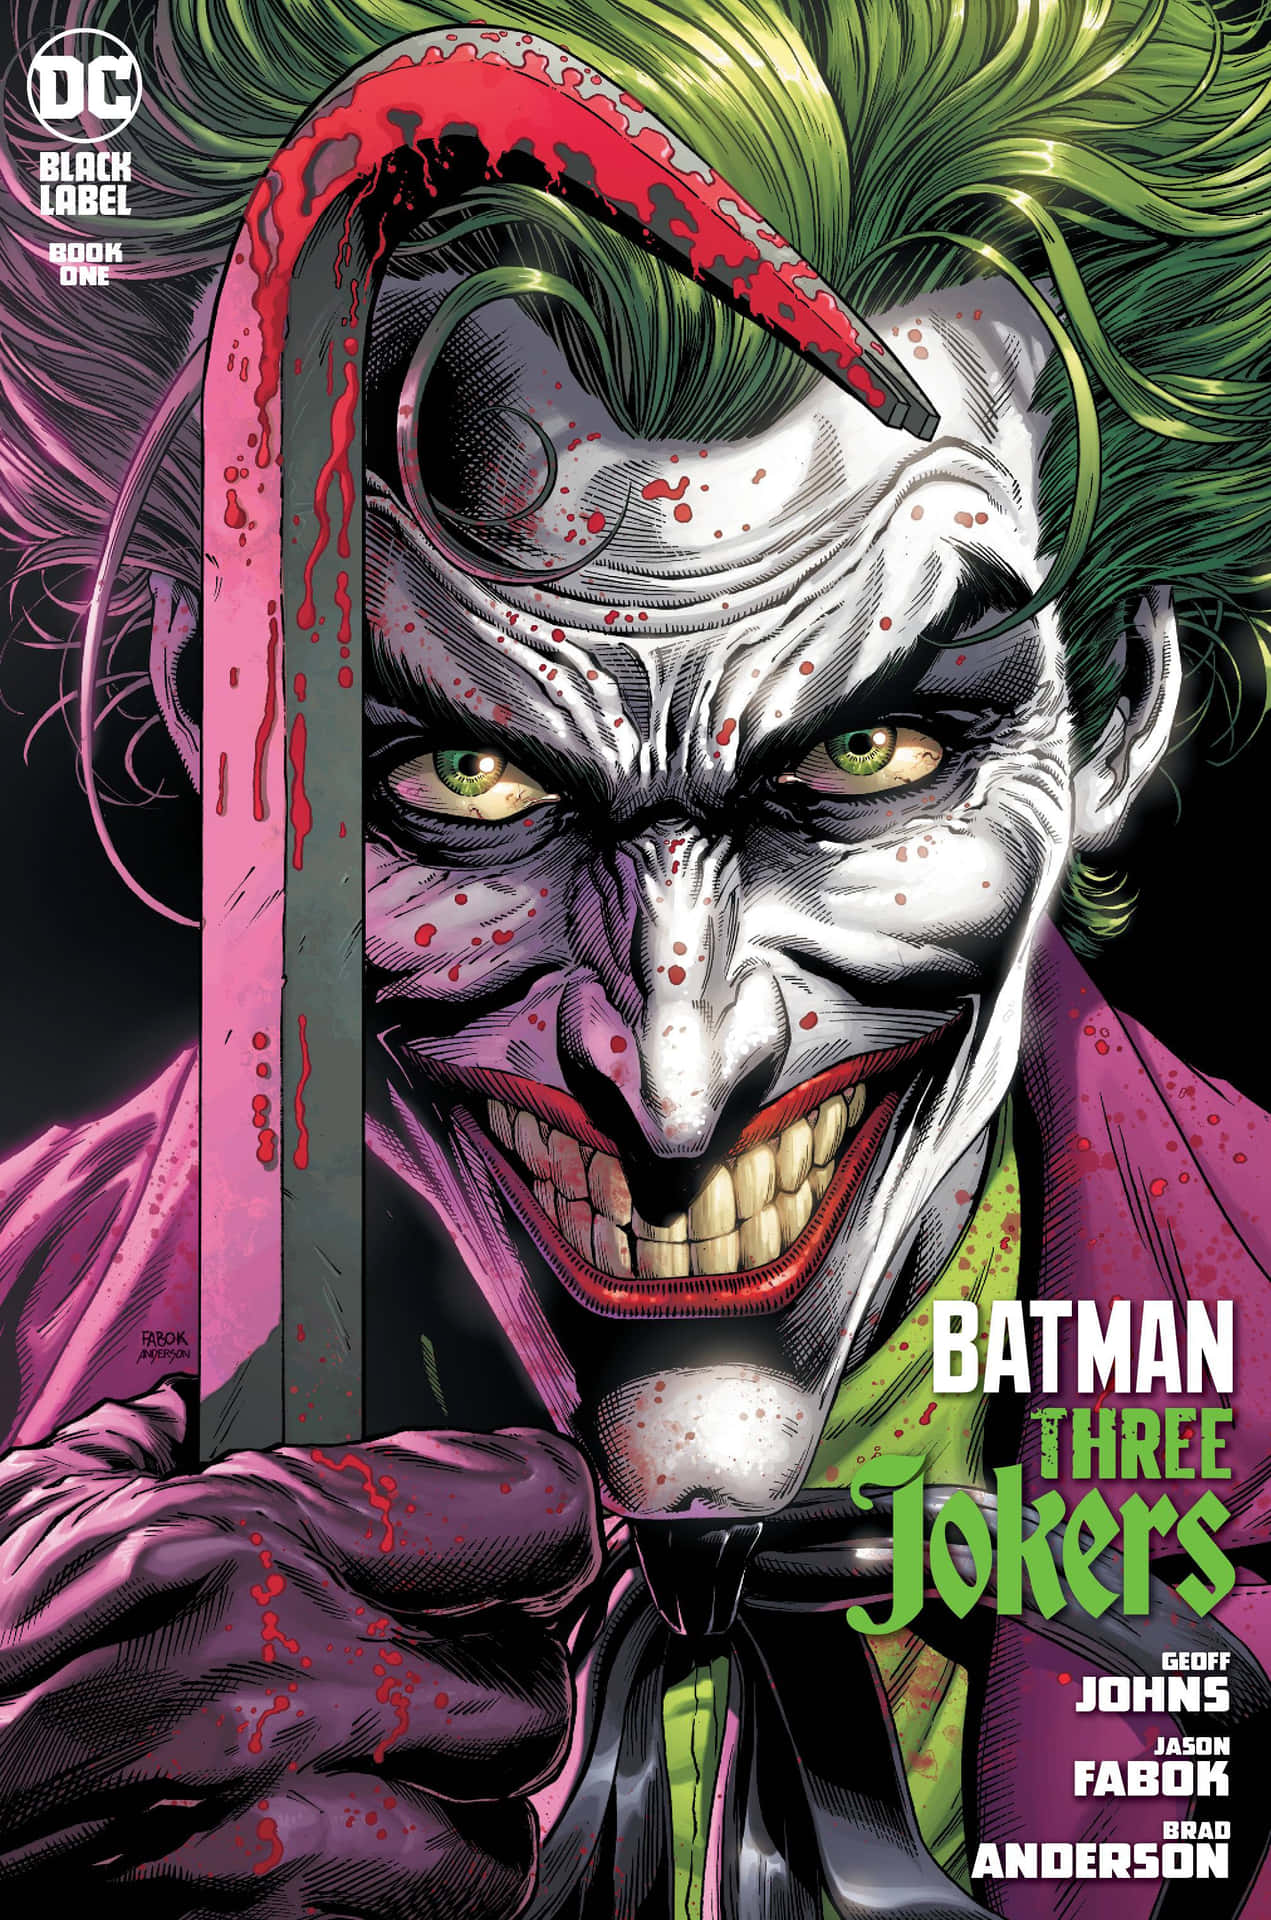 Elicónico Joker